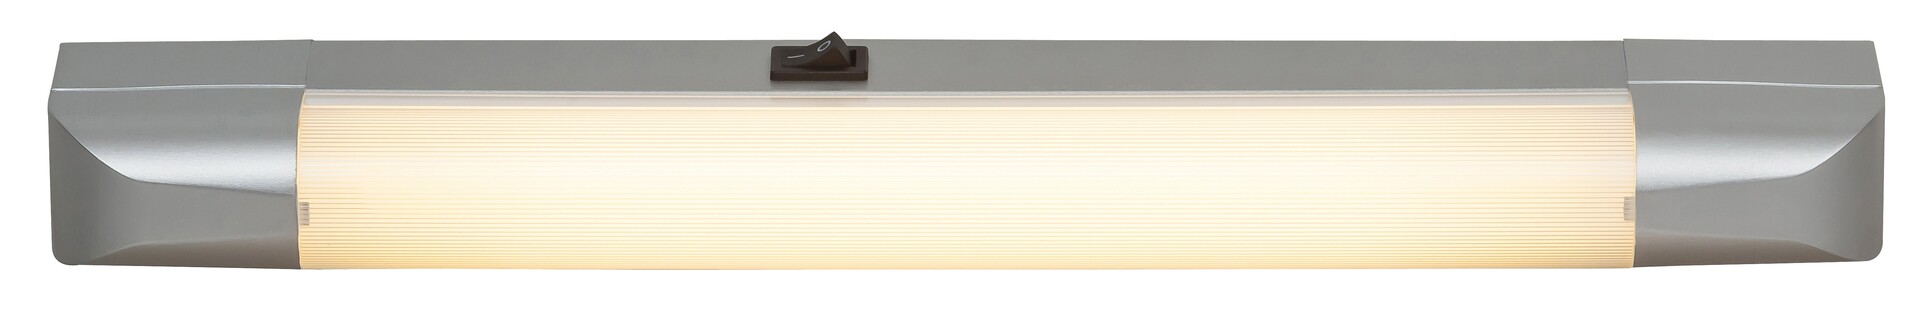 Arbeitsleuchte Band light 2306, G13, 10W, 2700K, 630lm, Metall, silber, warmweiß, 39,5cm